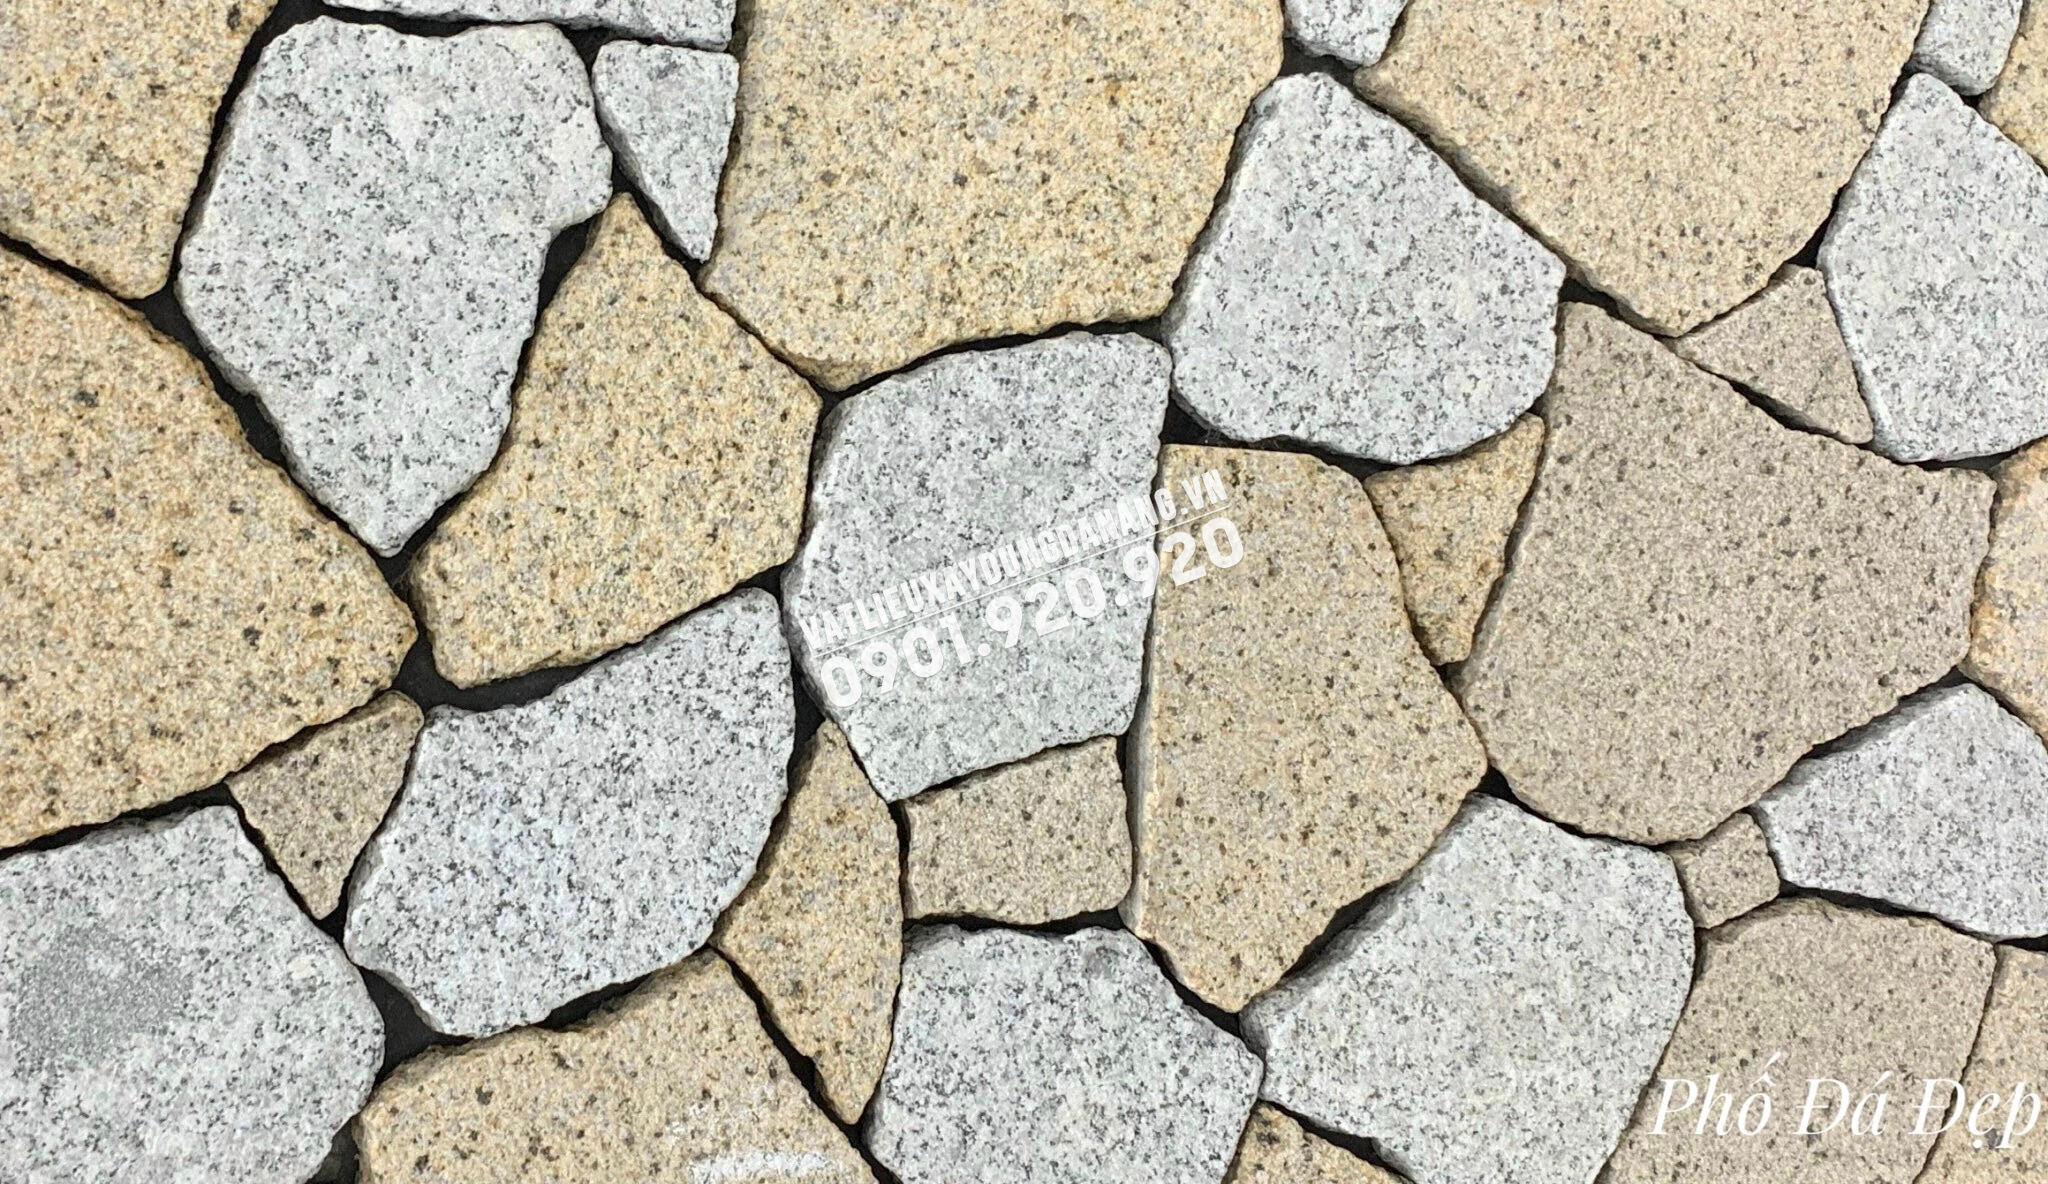 Đá rối granite ốp tường được ưa chuộng bởi tính thẩm mỹ đặc trưng. Tạo nên một vẻ đẹp tự nhiên, ấn tượng, sản phẩm này được sử dụng để làm tường ốp cả ngoại và trong nhà. Với chất lượng đá granite cao cấp, sản phẩm này sẽ giúp ngôi nhà của bạn trở nên đặc biệt và sang trọng hơn. Hãy theo dõi những hình ảnh ấn tượng về đá rối granite ốp tường.